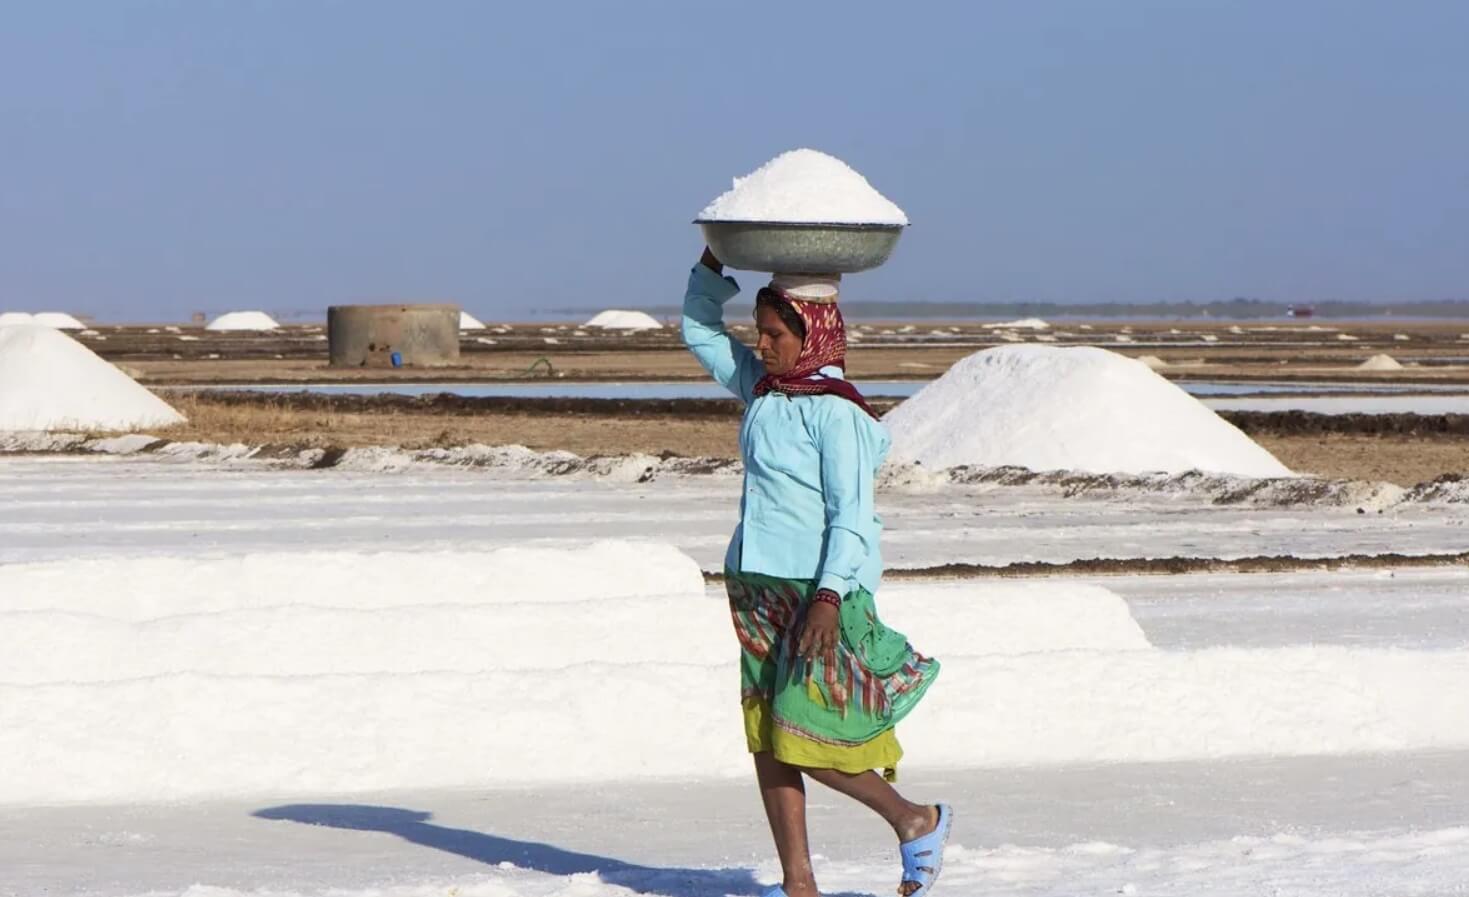 Добыча соли в Индии. Тяжелый физический труд на солончаке вынуждены выполнять даже женщины. Источник: fishki.net. Фото.